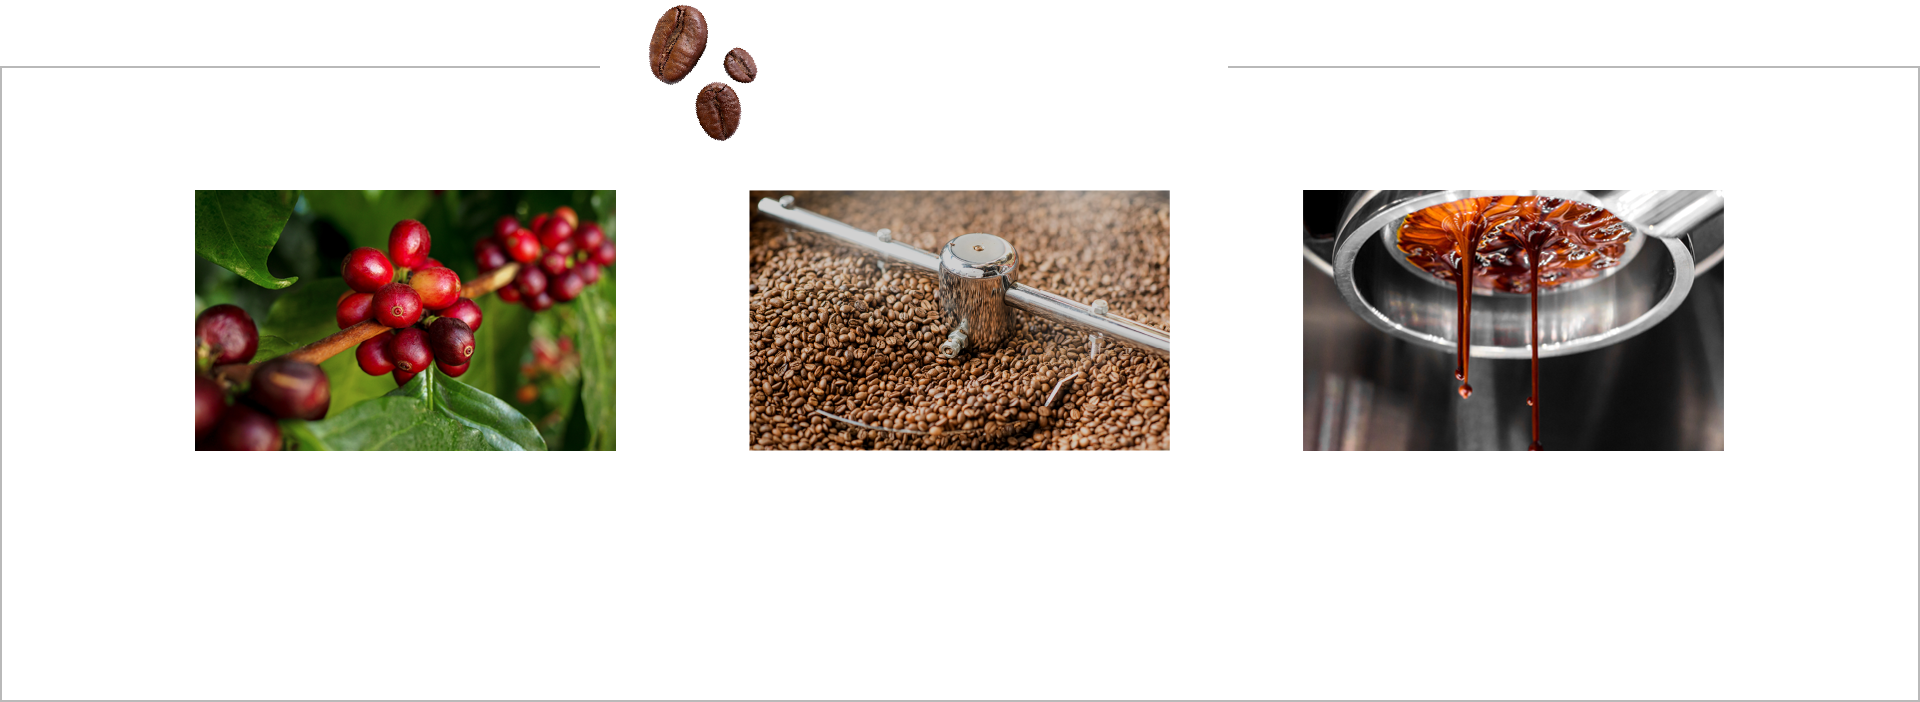 中味のポイント カフェイン含有量の多い品種の豆を使用 浅煎り豆使用で苦みを低減 カフェインを効率よく抽出